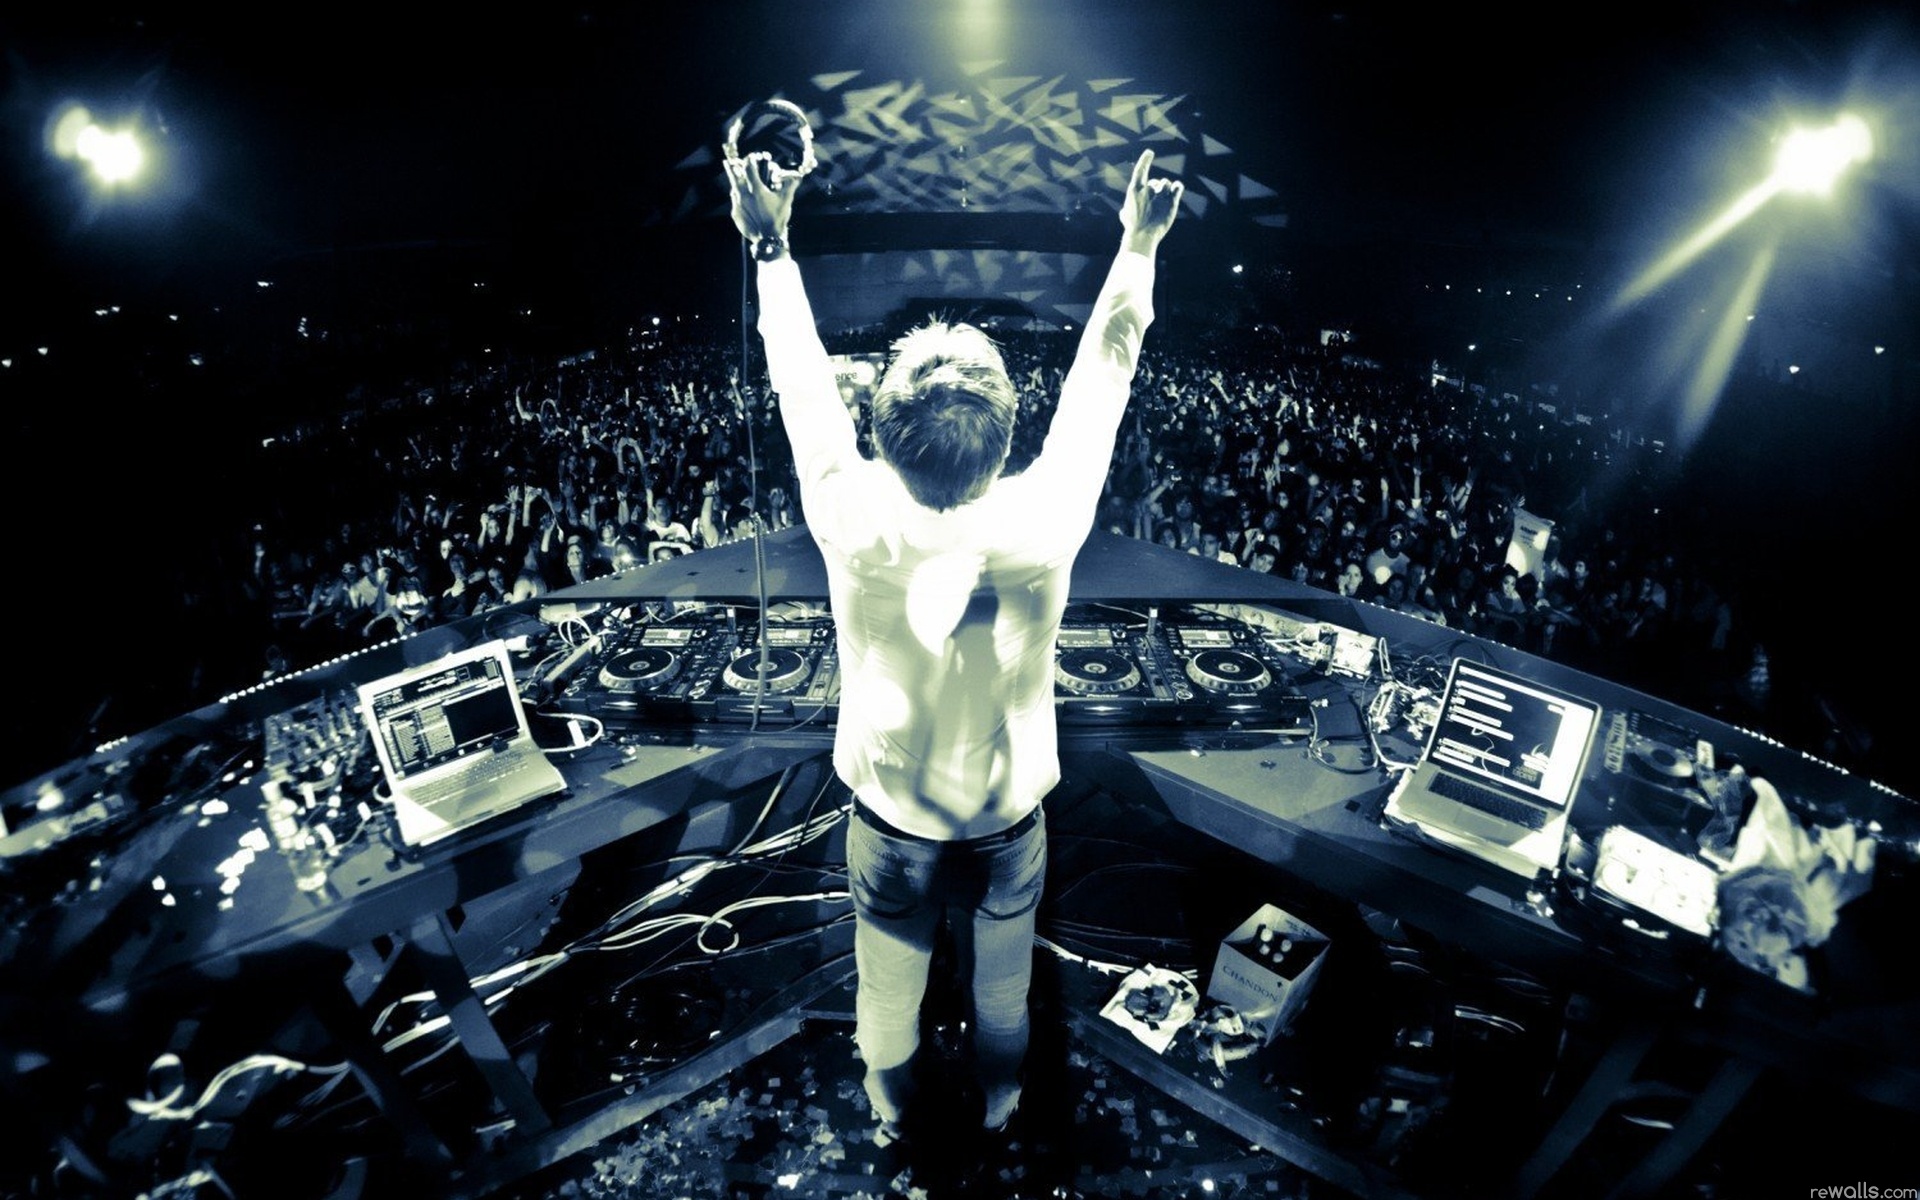 Dj, Music, And Party Image - Armin Van Buuren In Concert - HD Wallpaper 